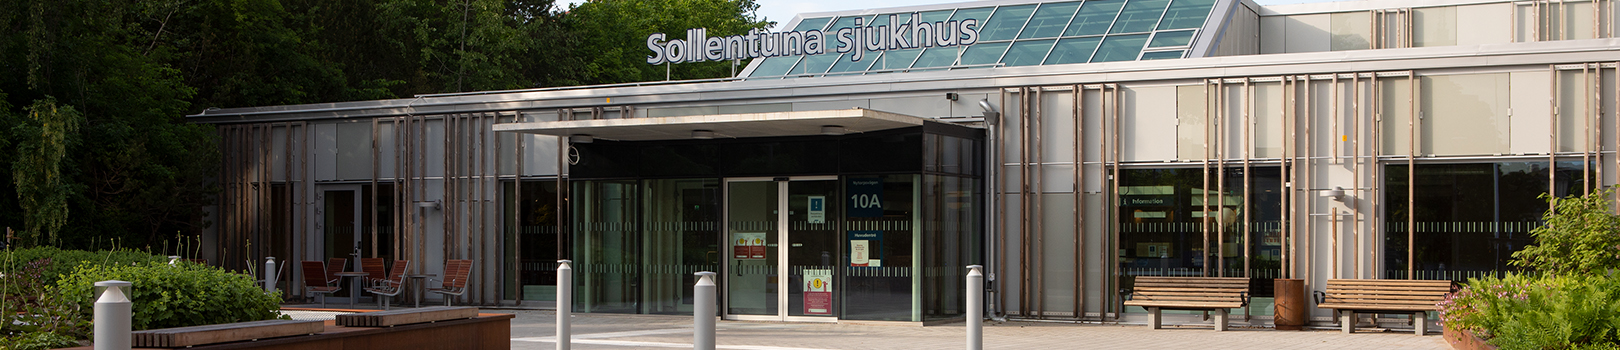 Entré till Sollentuna sjukhus gråa byggnad. Träd i bakgrunden och sittbänkar till höger om entrén.